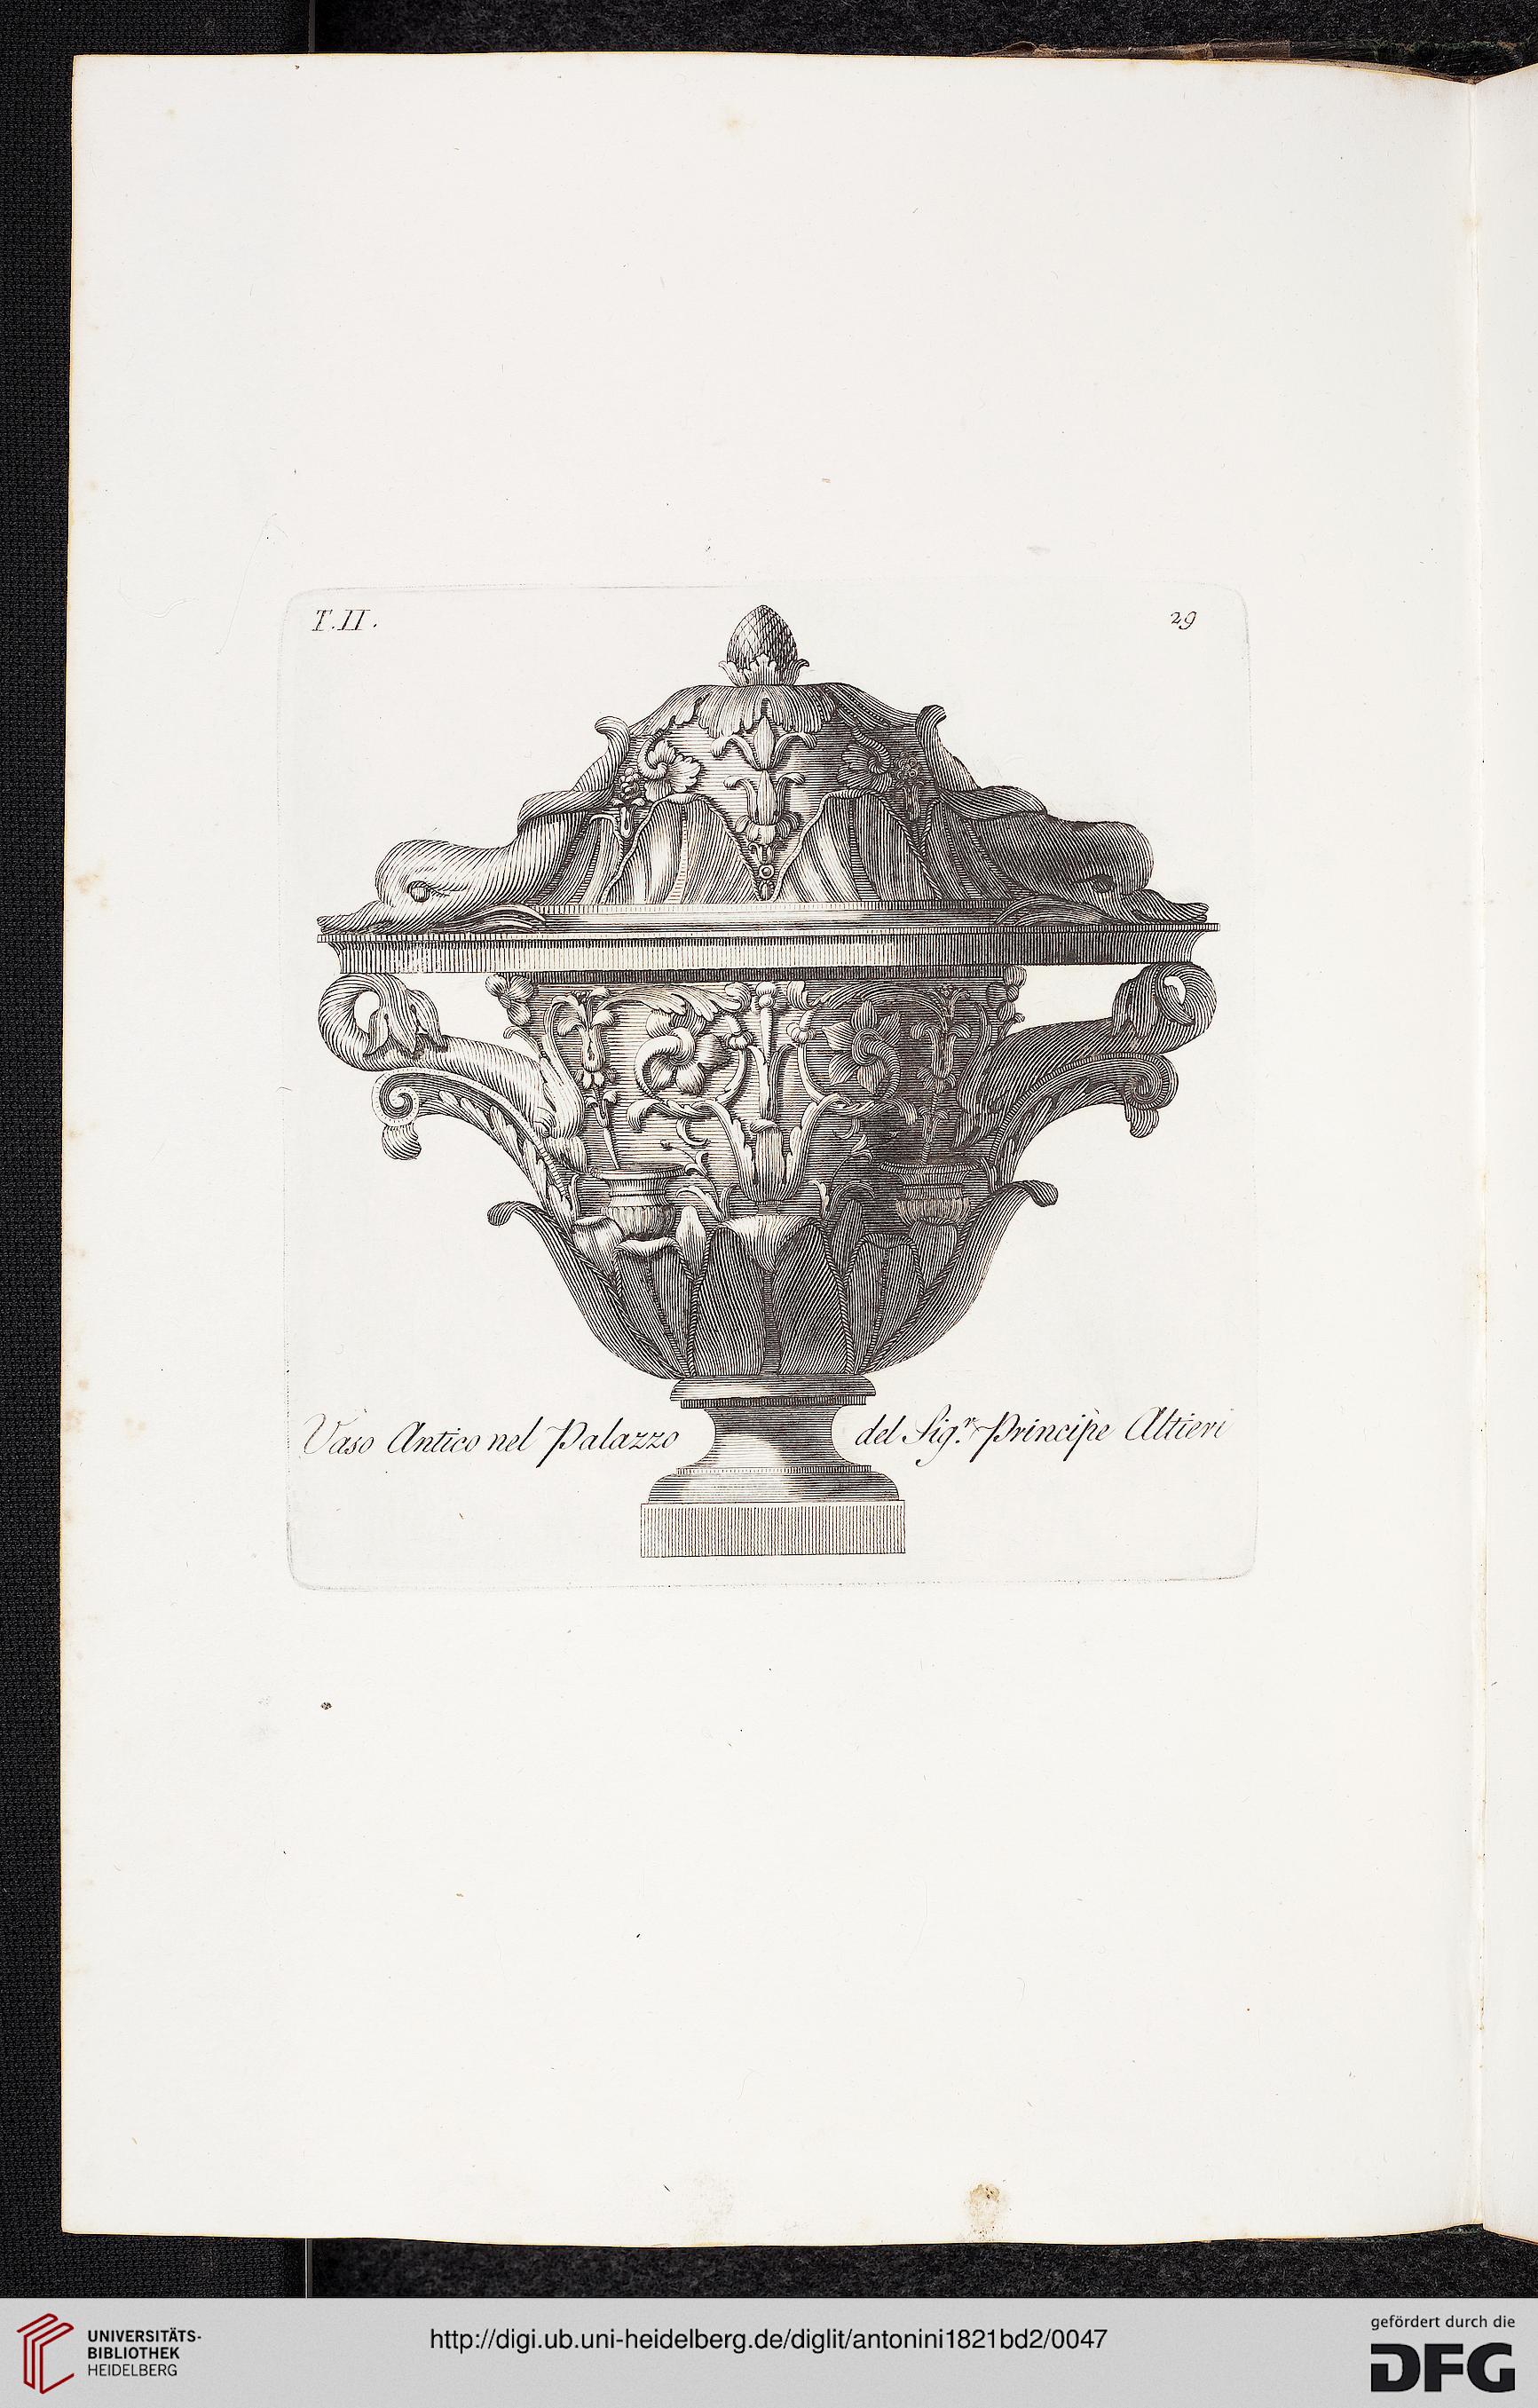 Digitalisat einer Seite aus Manuale di varj ornamenti von Carlo Antonini